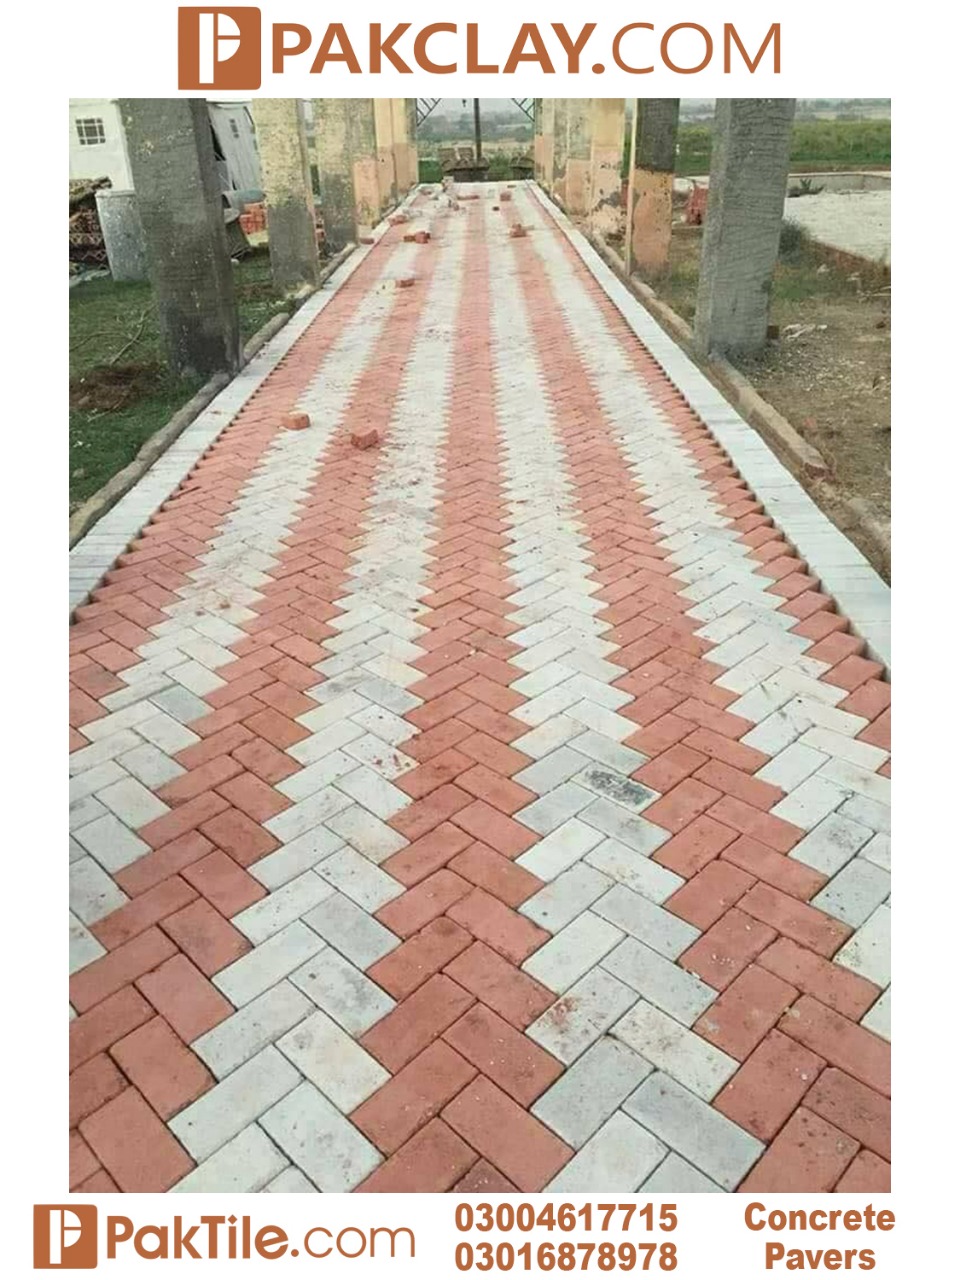 Pathway concrete floor tiles design in pakistan